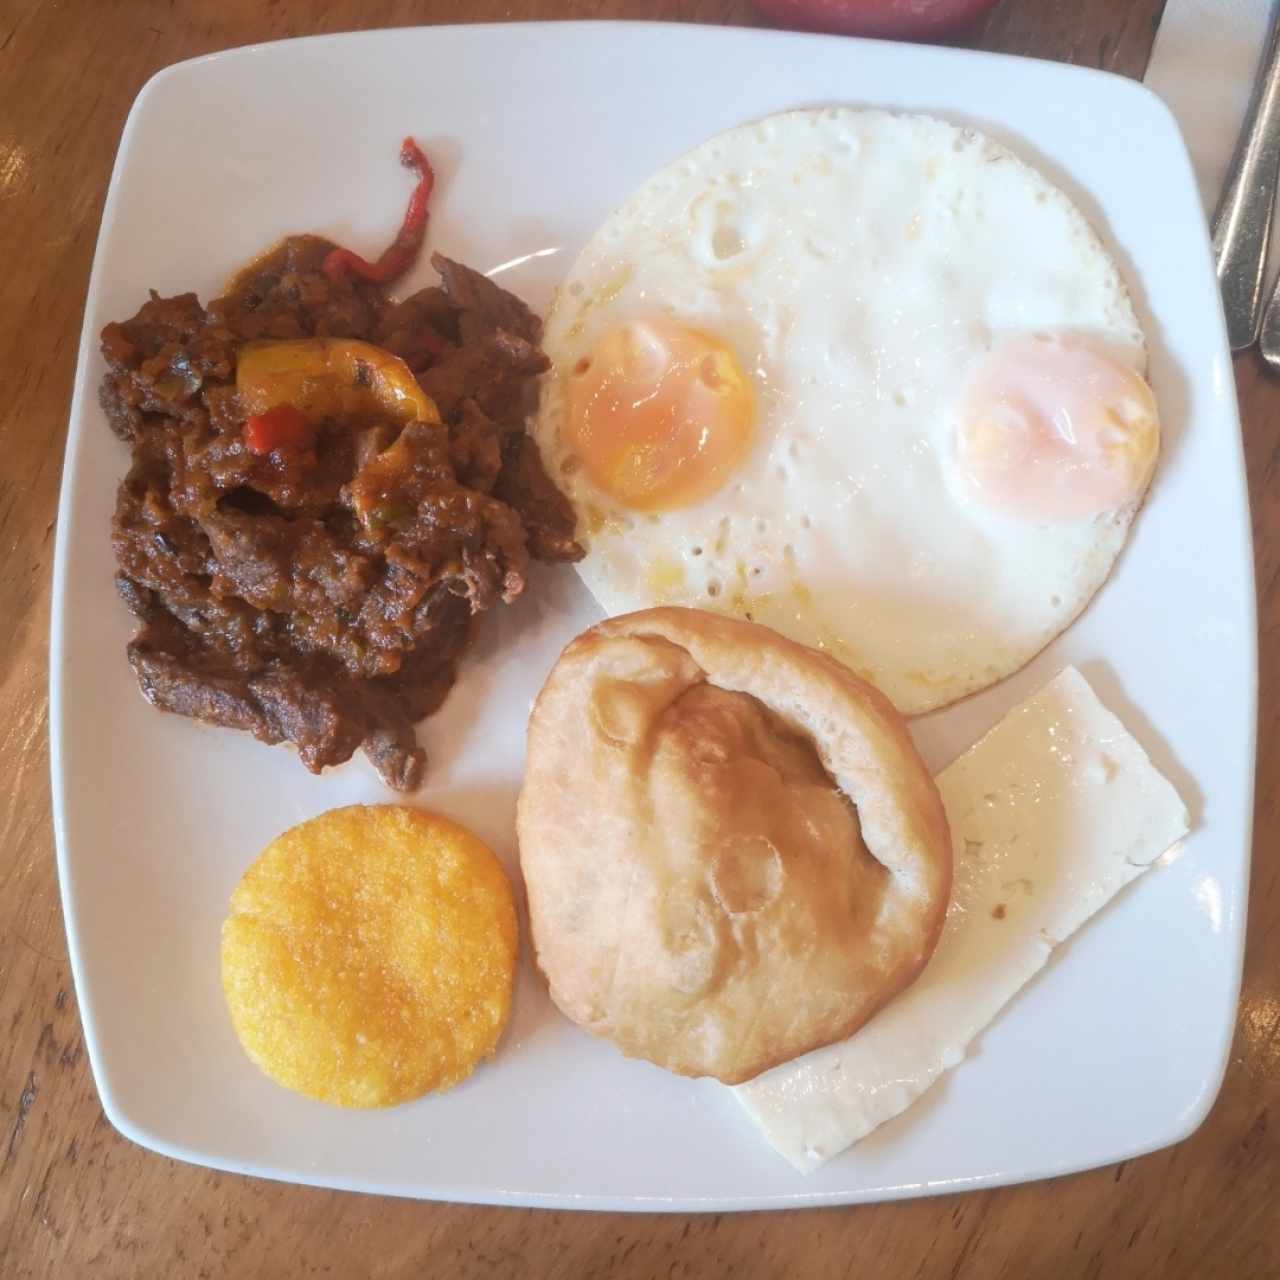 Desayuno "El Panameño" 